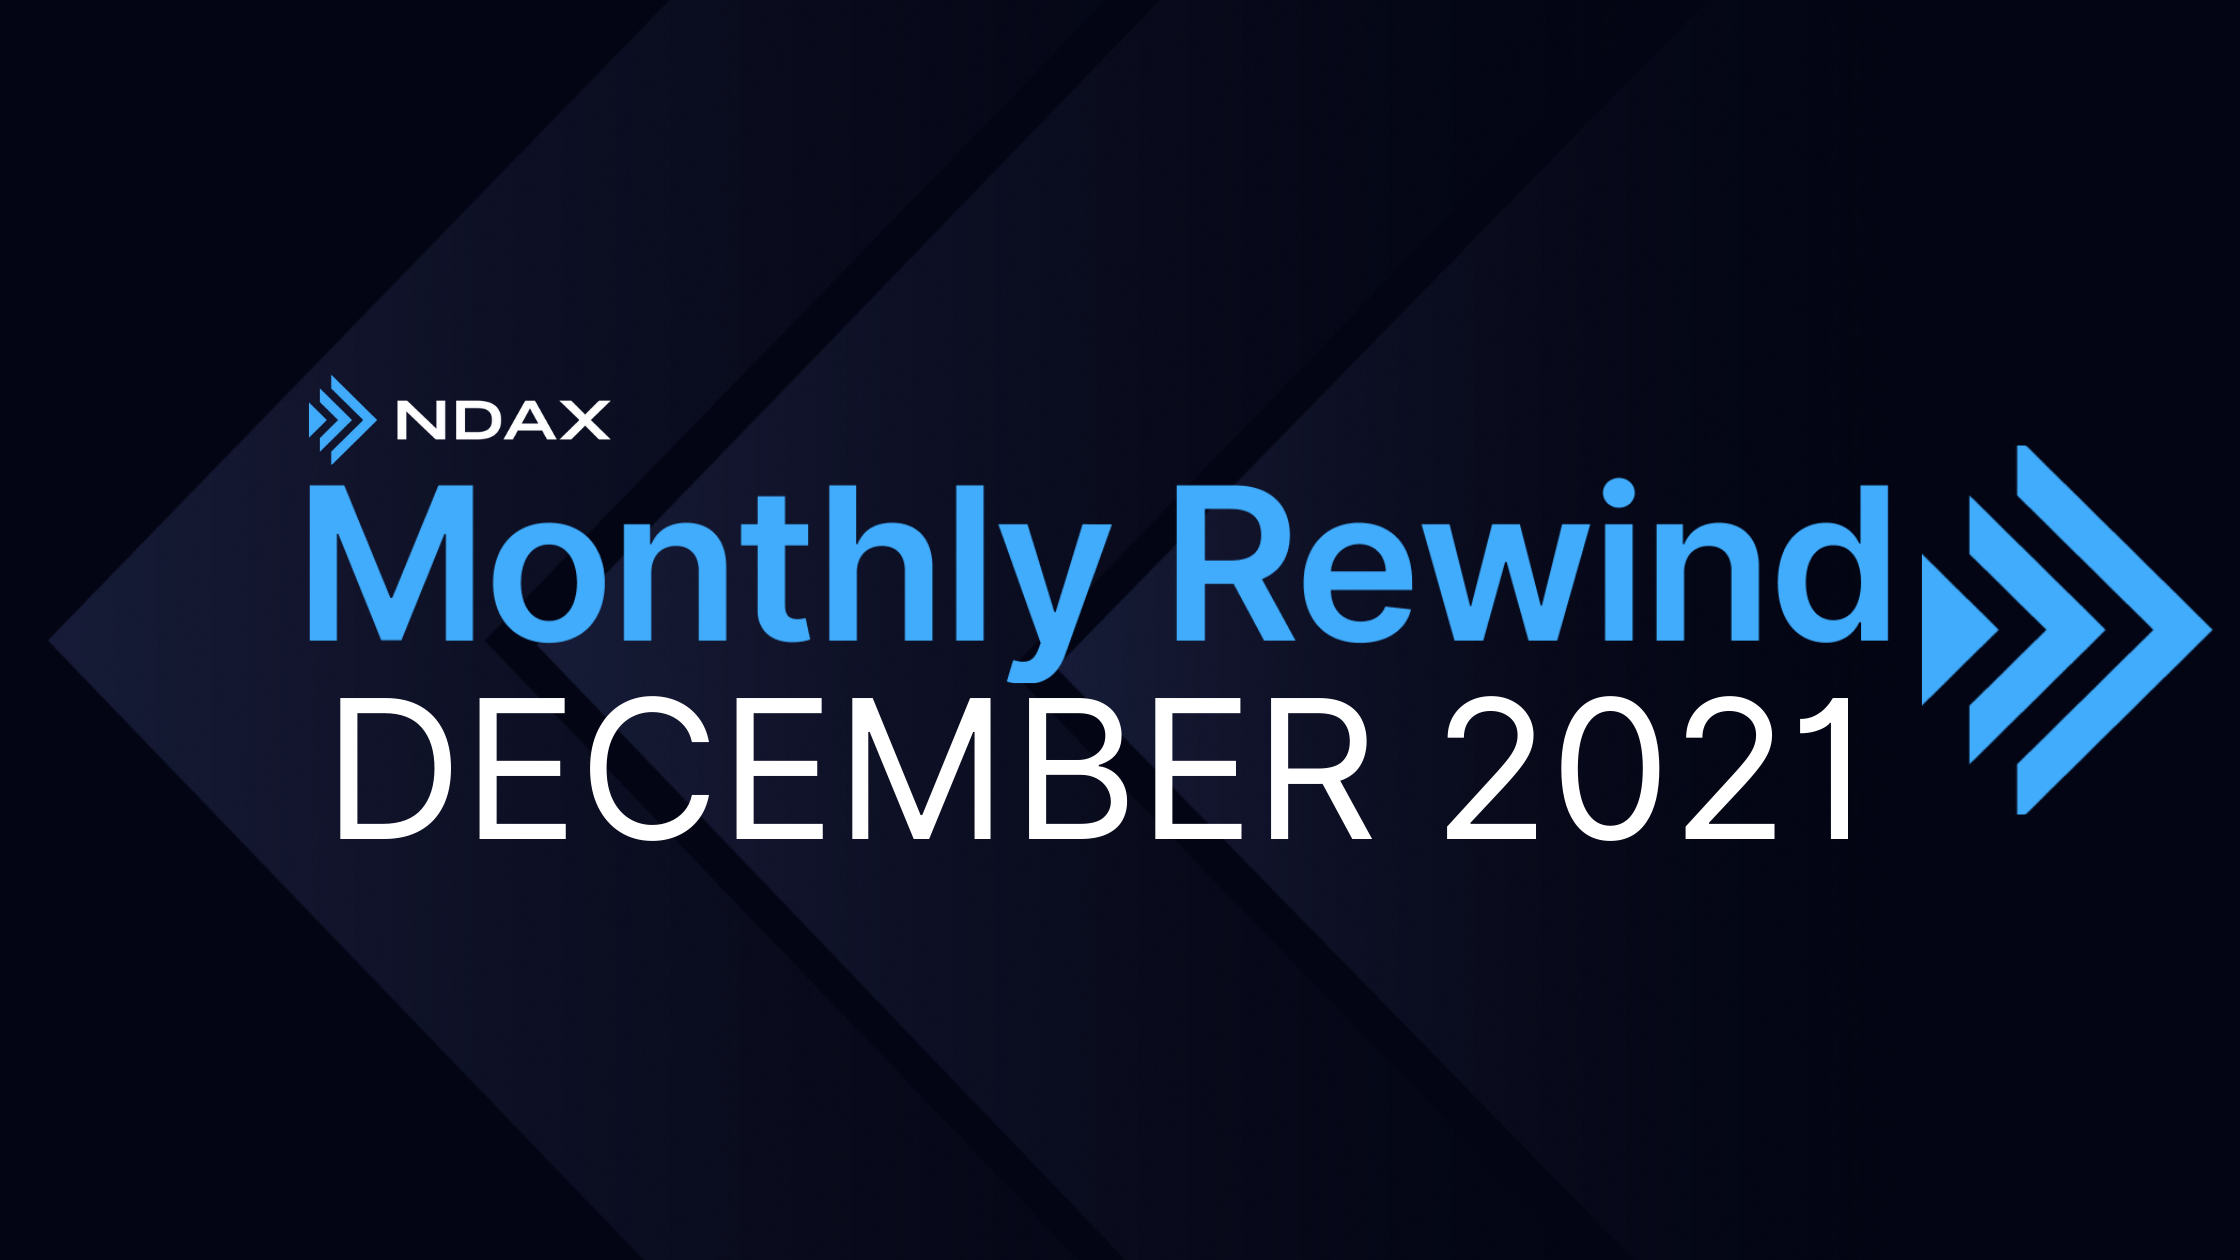 NDAX Monthly Rewind - December 2021